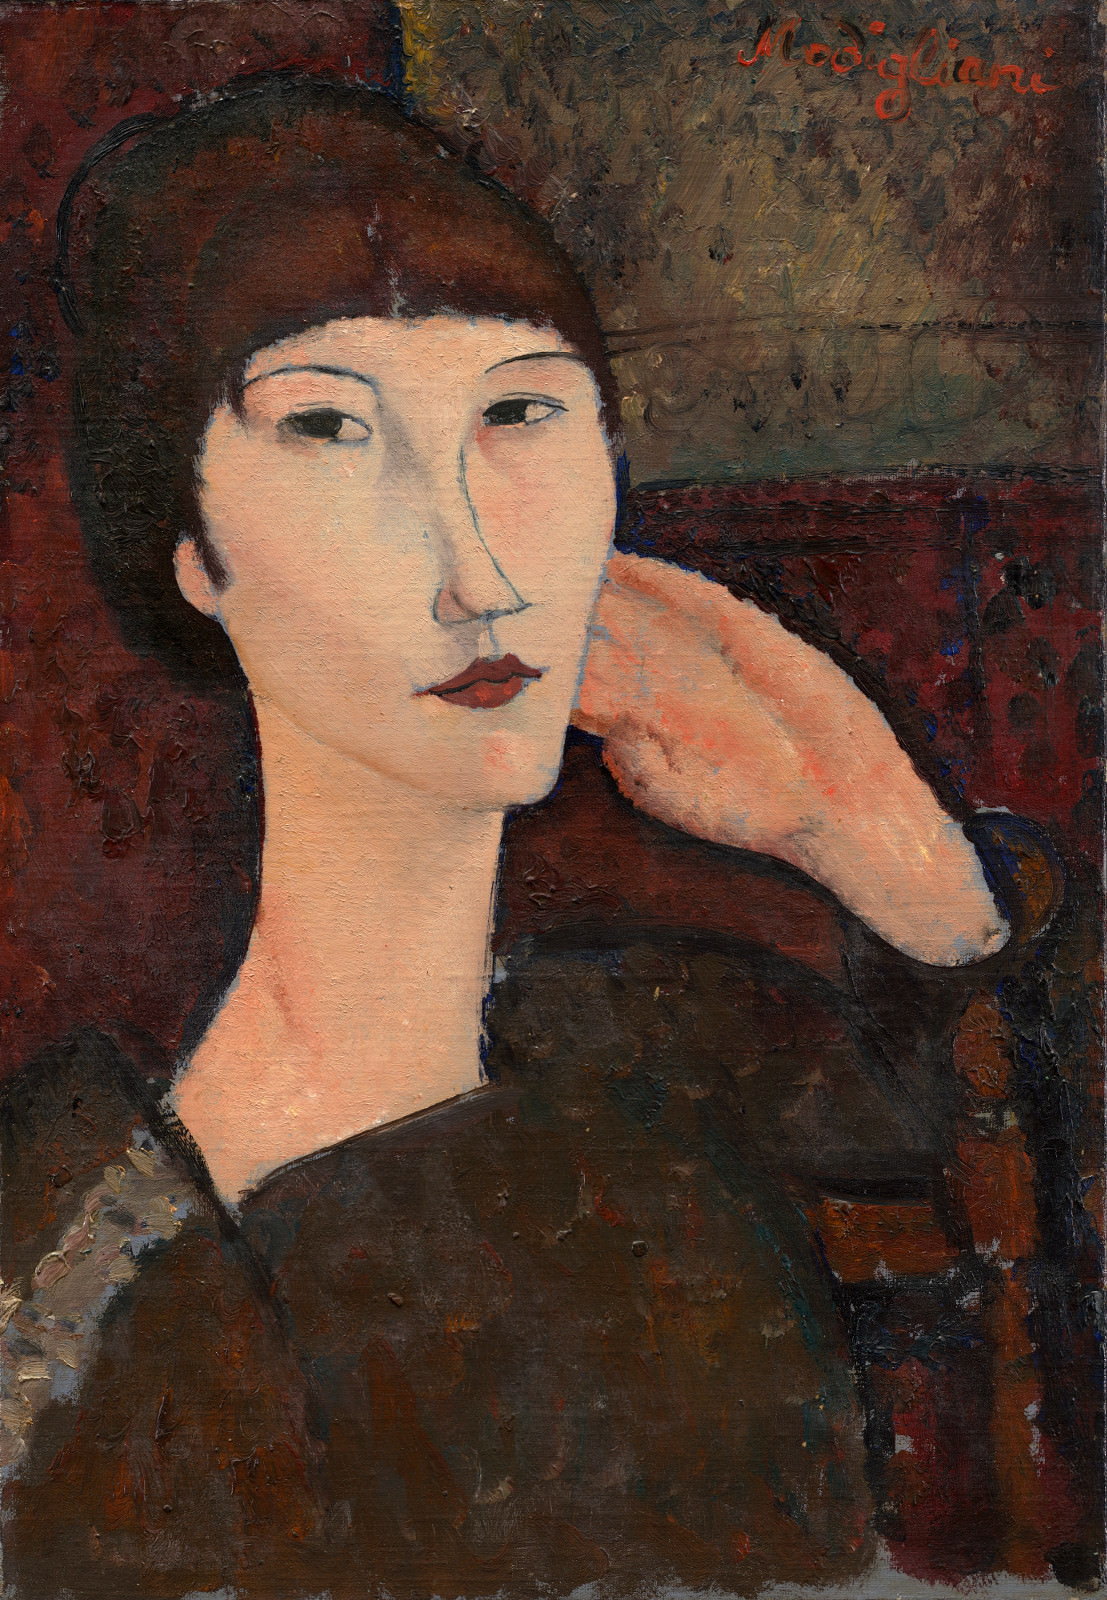 התאנה.. 8 - אדריאן (אישה עם פוני), אמדאו מודיליאני, 1917, שמן פשתן על, 55.3 x 38.1 ס מ. הגלרייה הלאומית לאומנות, וושינגטון. אוסף דייל צ'סטר.